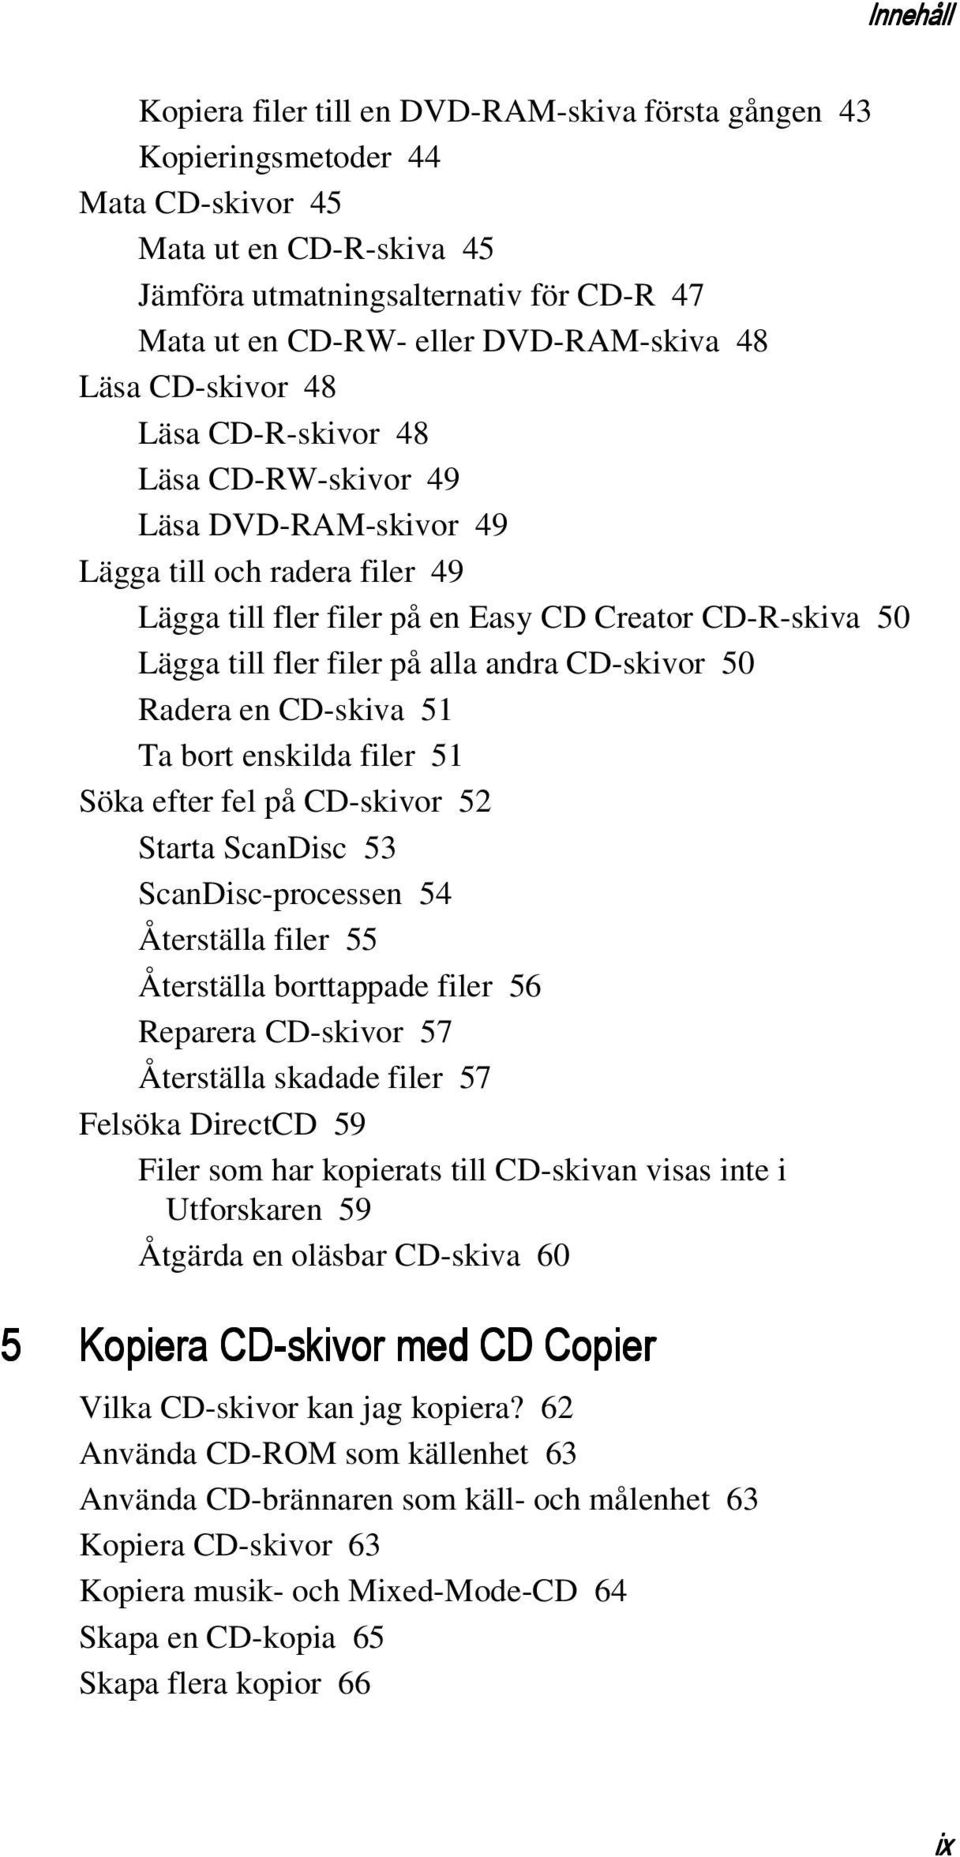 fler filer på alla andra CD-skivor 50 Radera en CD-skiva 51 Ta bort enskilda filer 51 Söka efter fel på CD-skivor 52 Starta ScanDisc 53 ScanDisc-processen 54 Återställa filer 55 Återställa